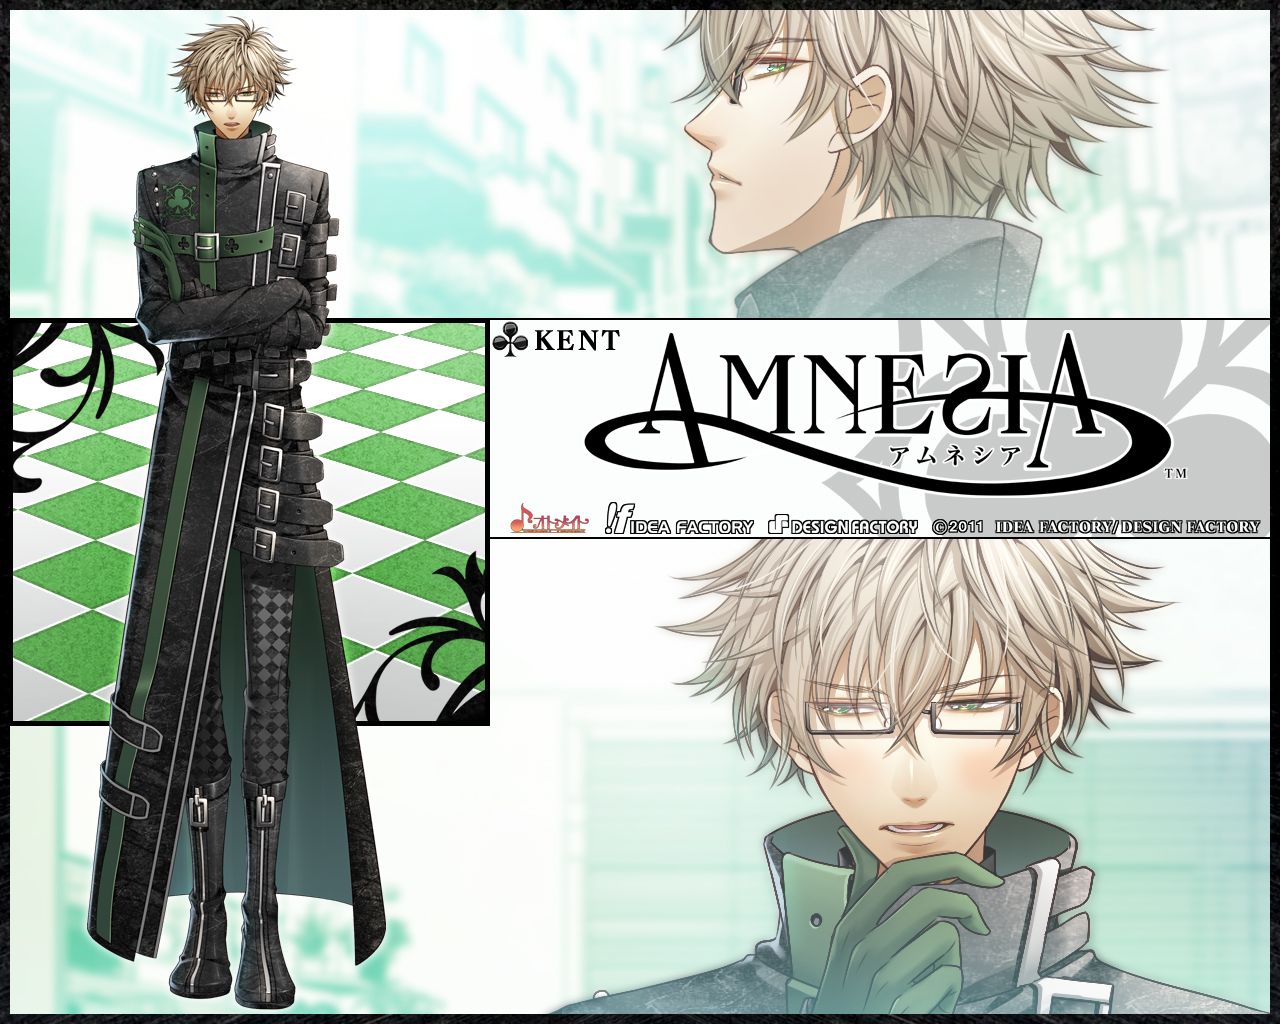 amnesia アムネシア Wallpaper: Toma. Amnesia anime, Anime, Kent amnesia